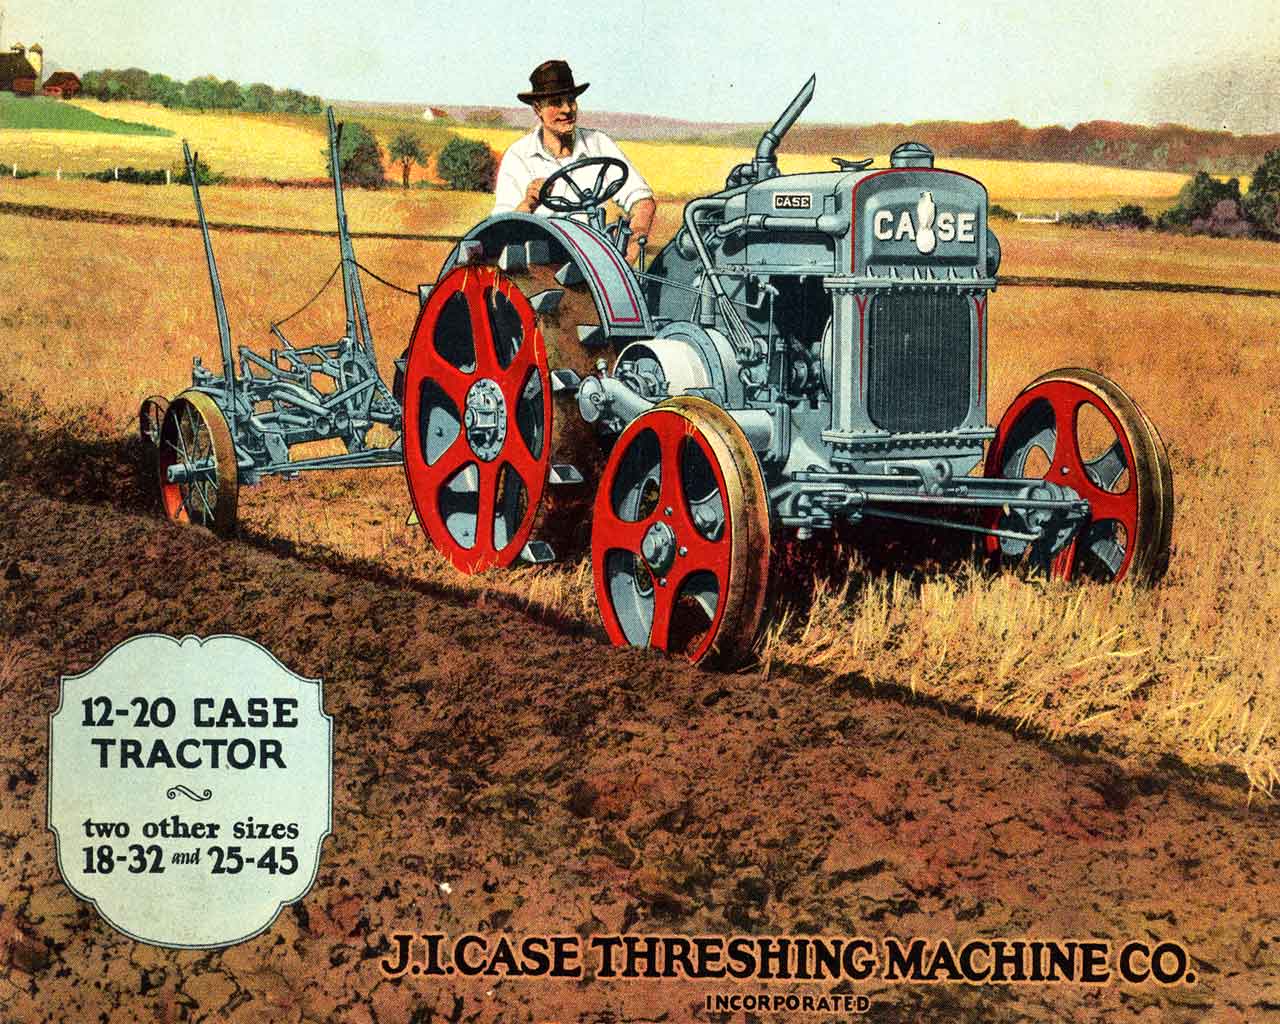 Farming Tractors and Equipment